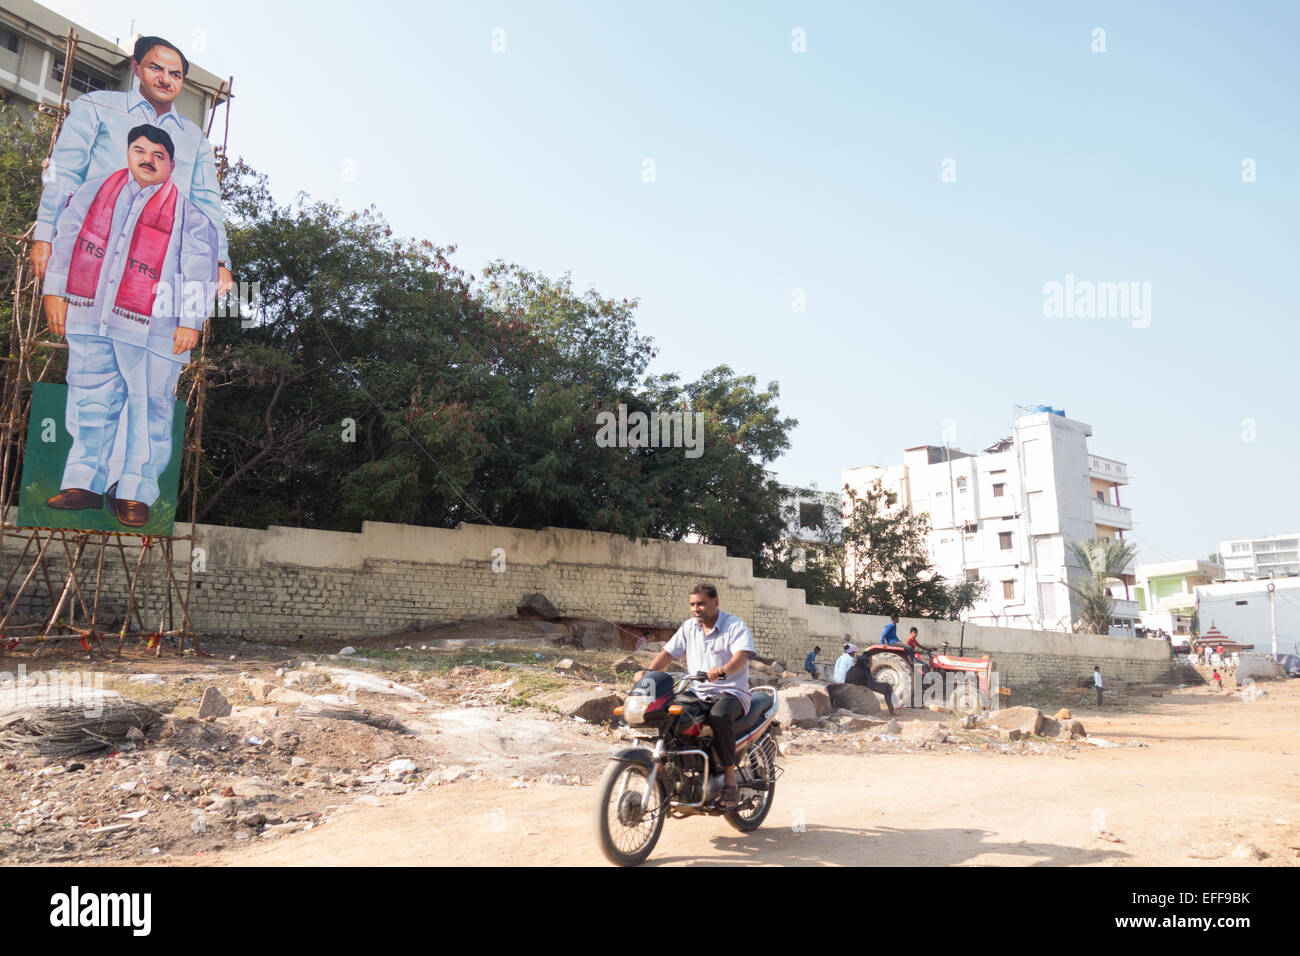 Ein indischer fährt vorbei an einem riesigen Horten von Telangana Chief Minister K Chandra Sekhar im Volksmund bekannt als KCR in Hyderabad, Indien Stockfoto